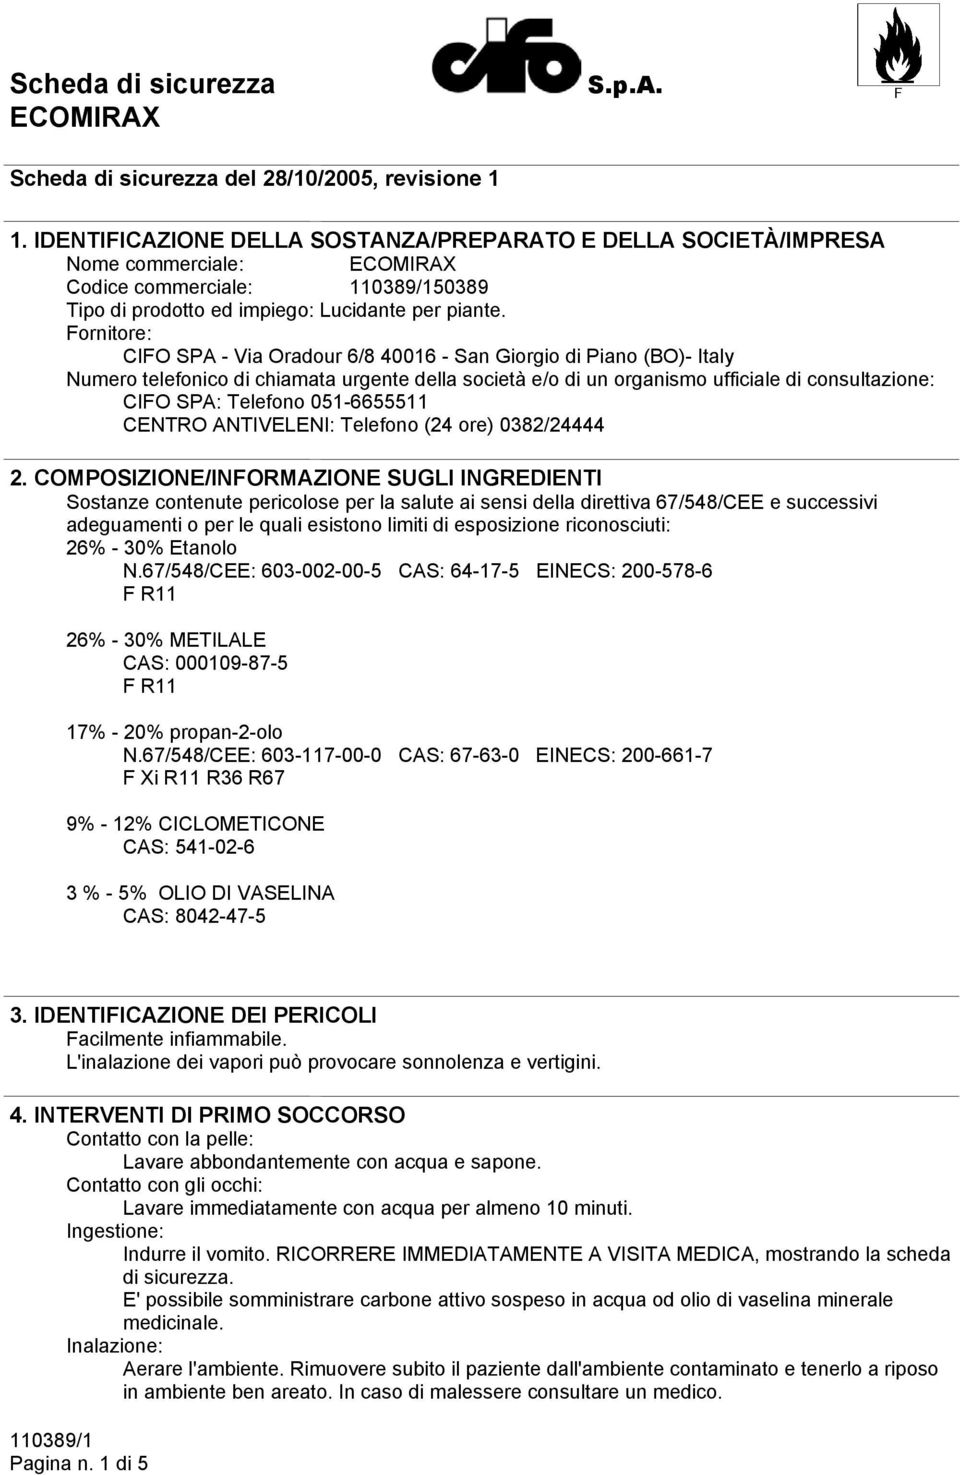 Fornitore: CIFO SPA - Via Oradour 6/8 40016 - San Giorgio di Piano (BO)- Italy Numero telefonico di chiamata urgente della società e/o di un organismo ufficiale di consultazione: CIFO SPA: Telefono